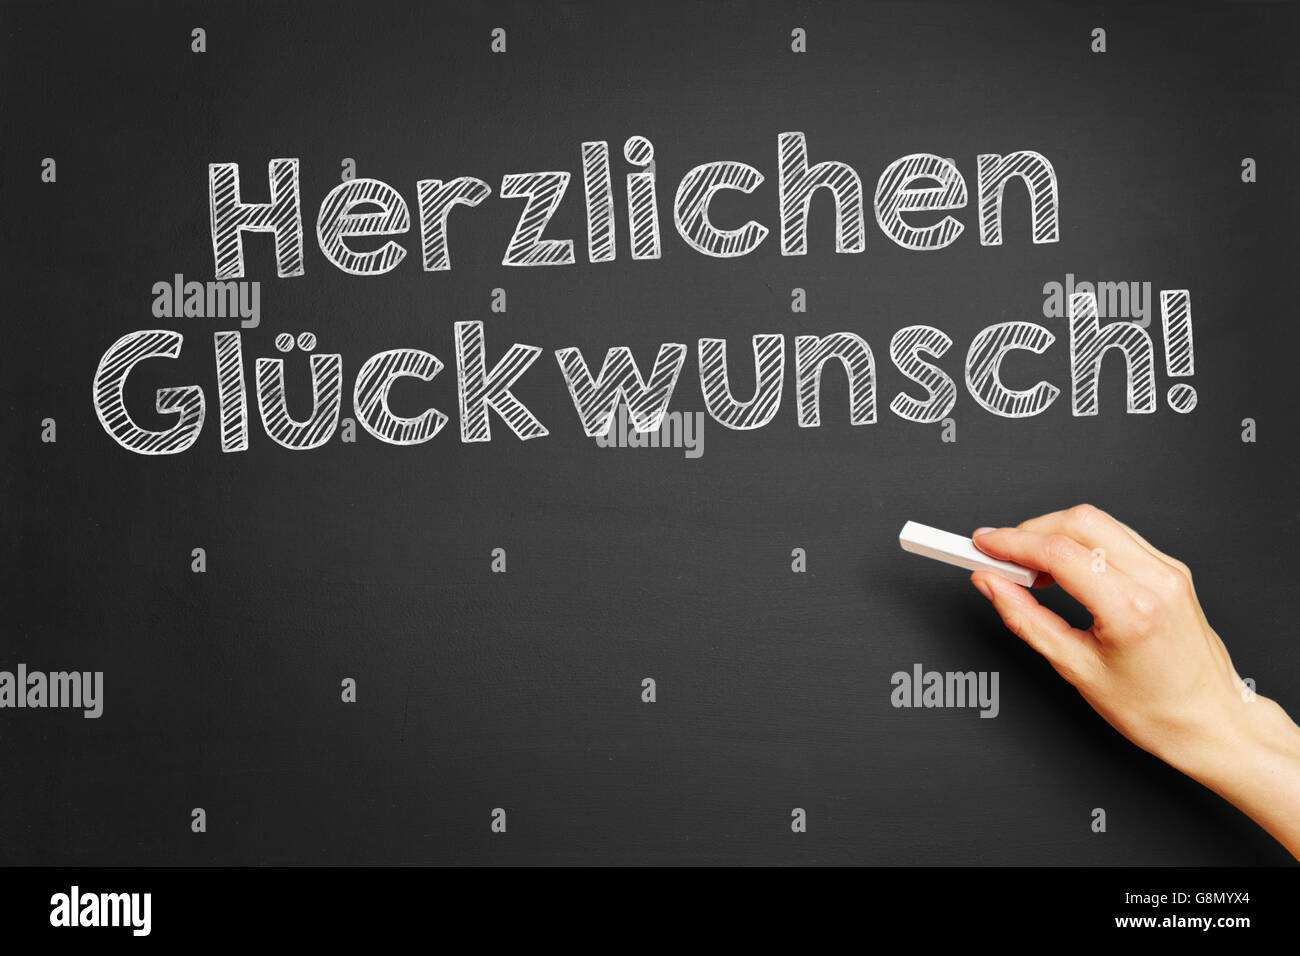 Hand writes in German 'Herzlichen Glückwunsch!' (Congratulations) on blackboard Stock Photo